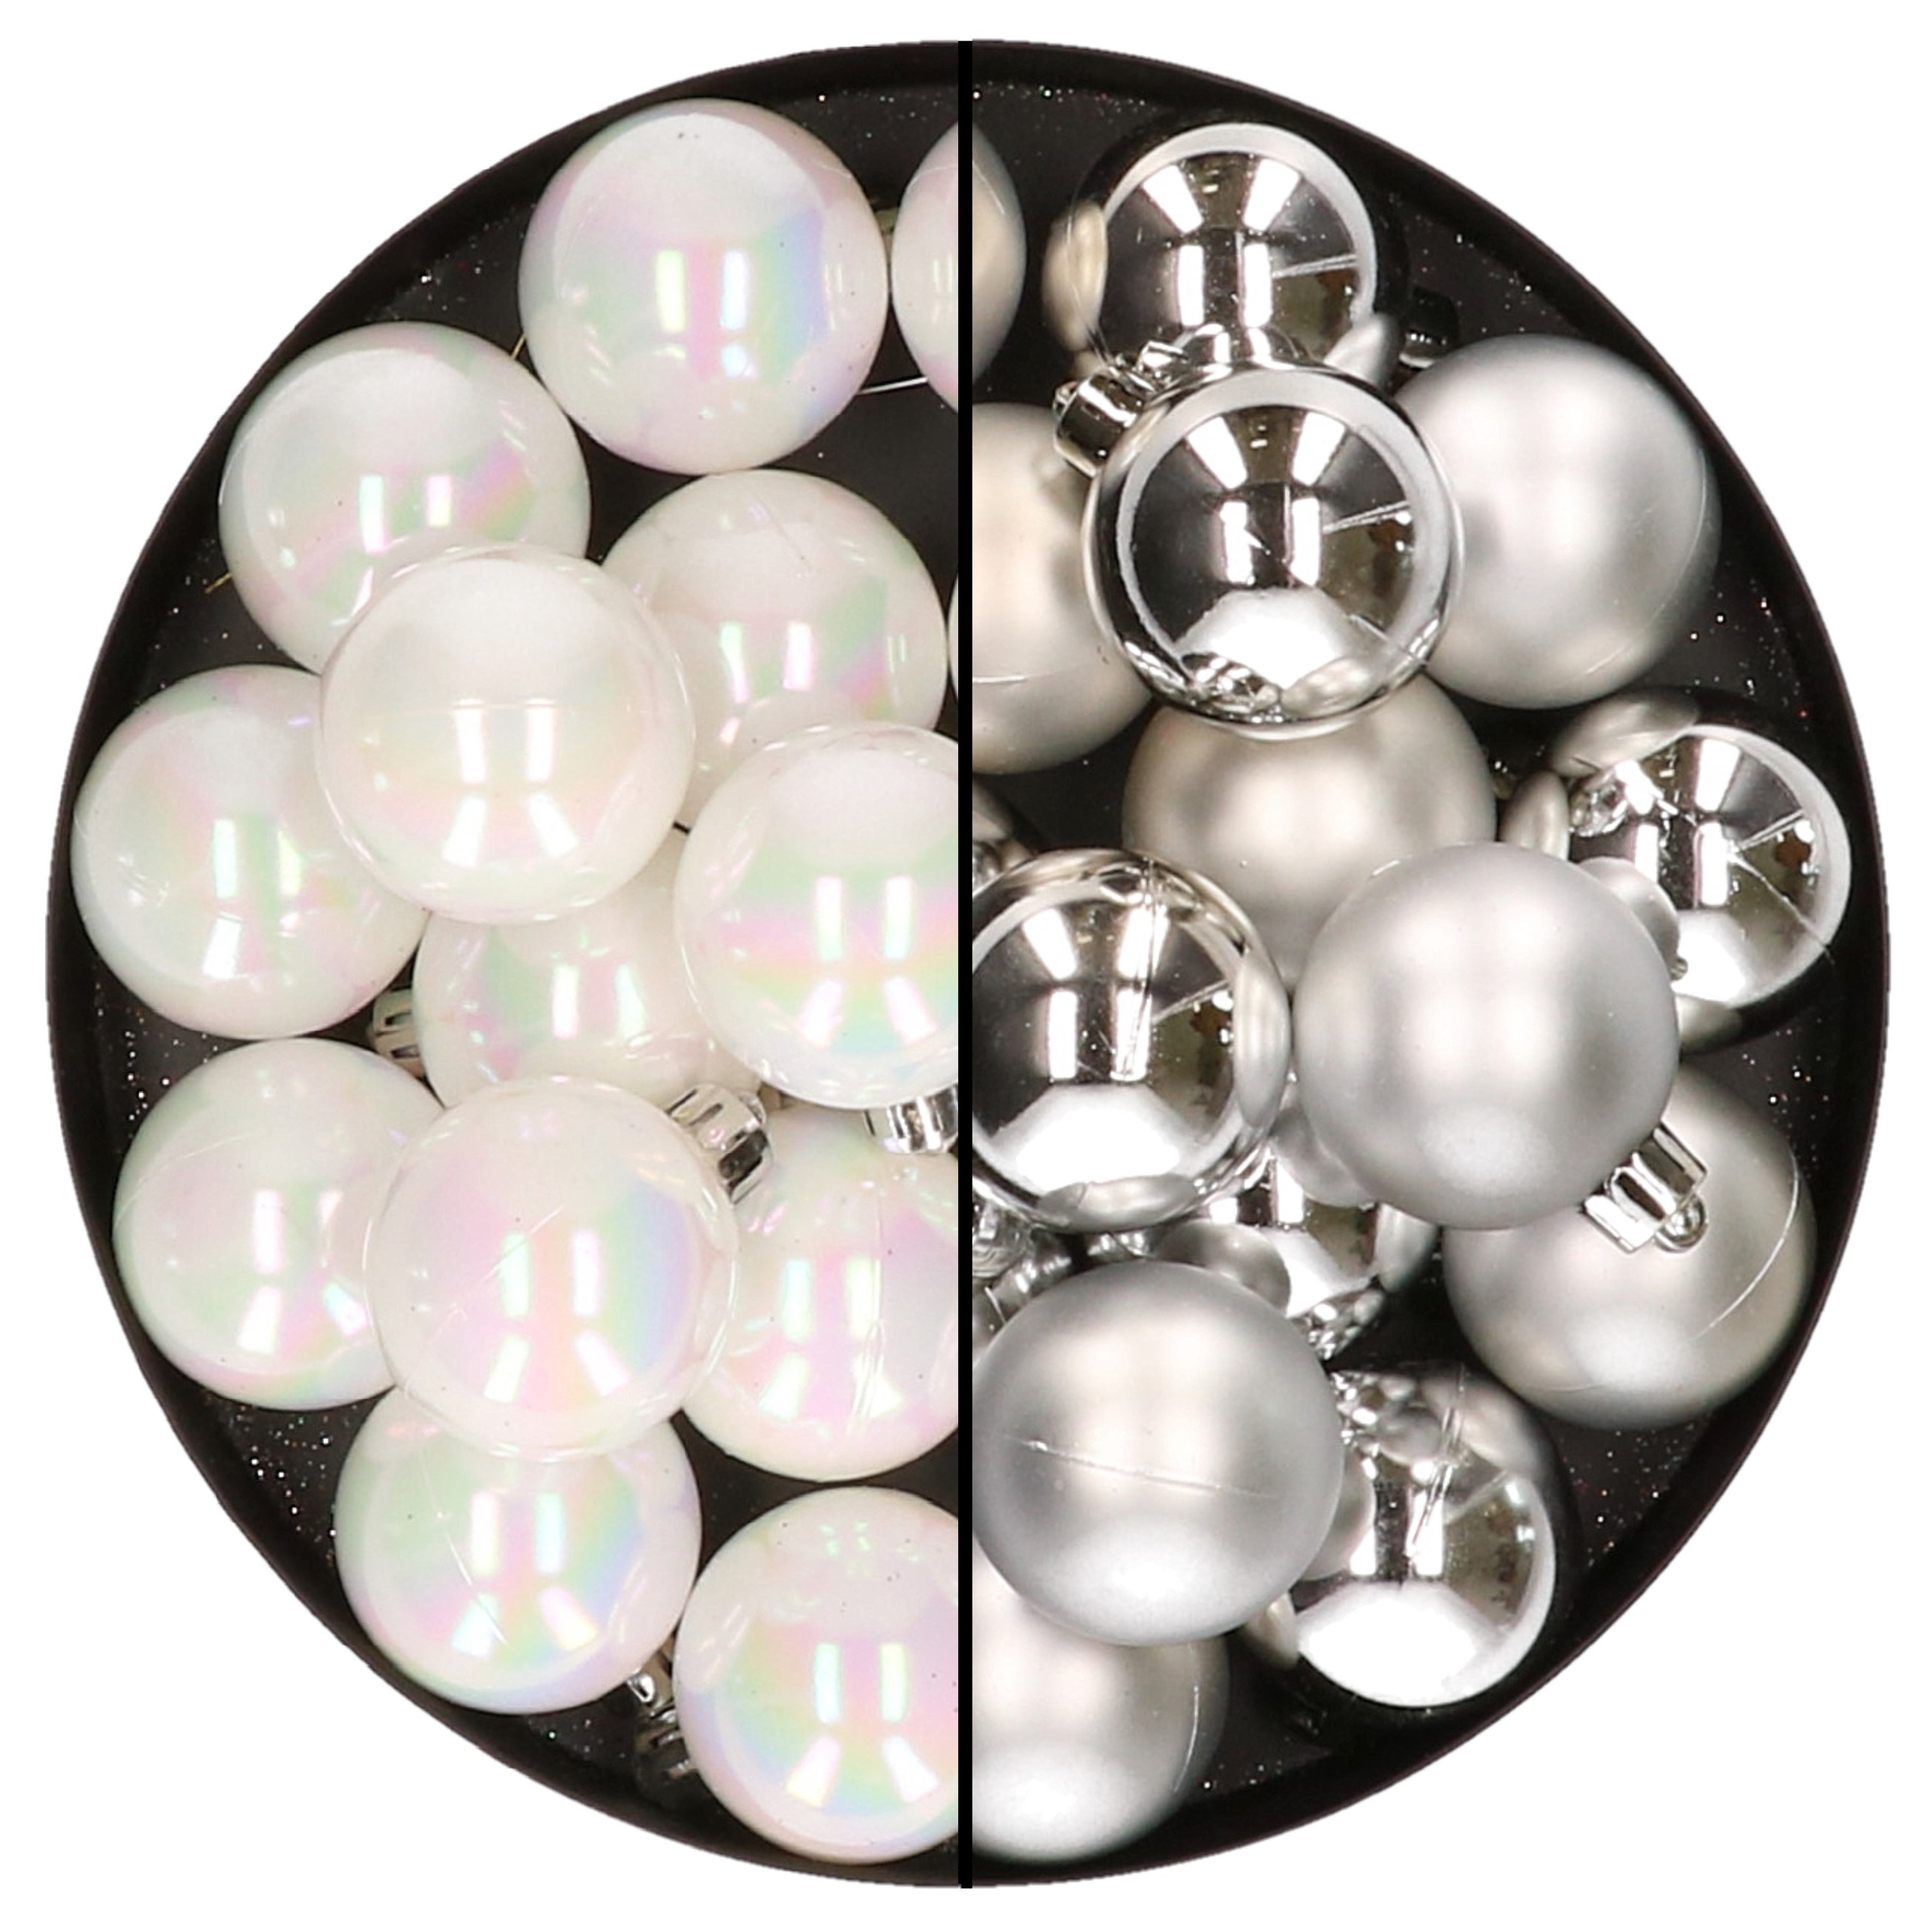 32x stuks kunststof kerstballen mix van parelmoer wit en zilver 4 cm